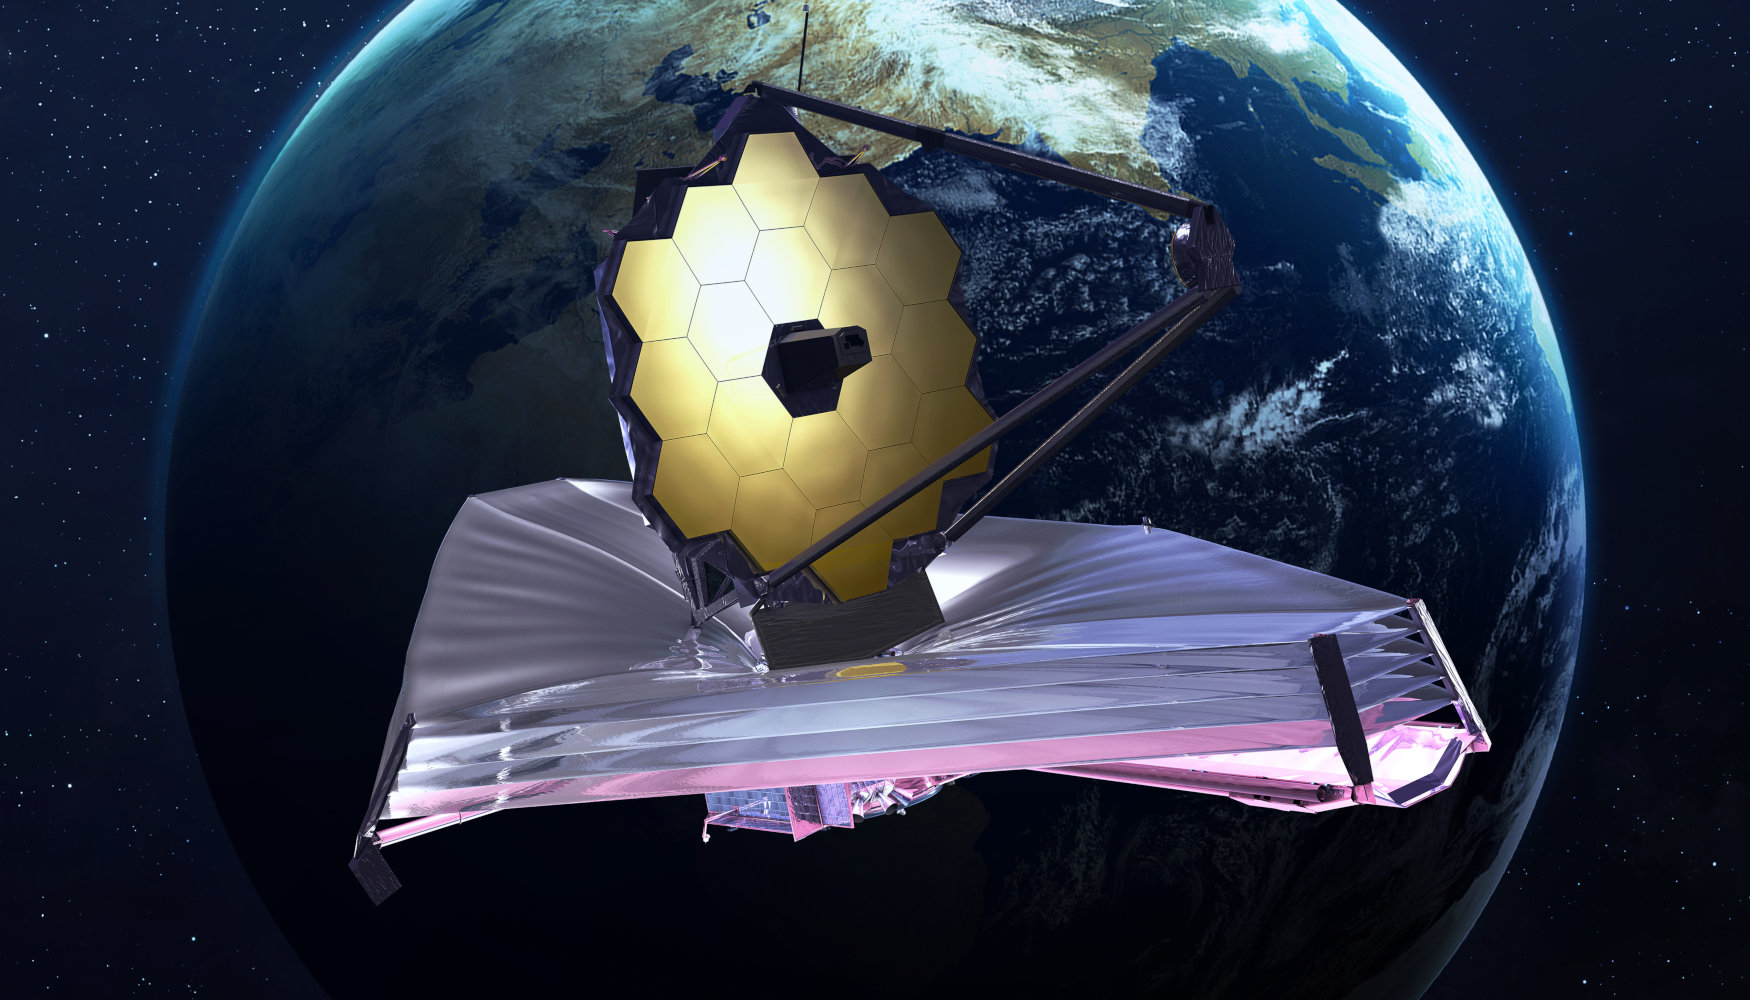 Διάστημα: Οι επιστήμονες παρατηρούν για πρώτη φορά ασύρματη μετάδοση ενέργειας στη Γη